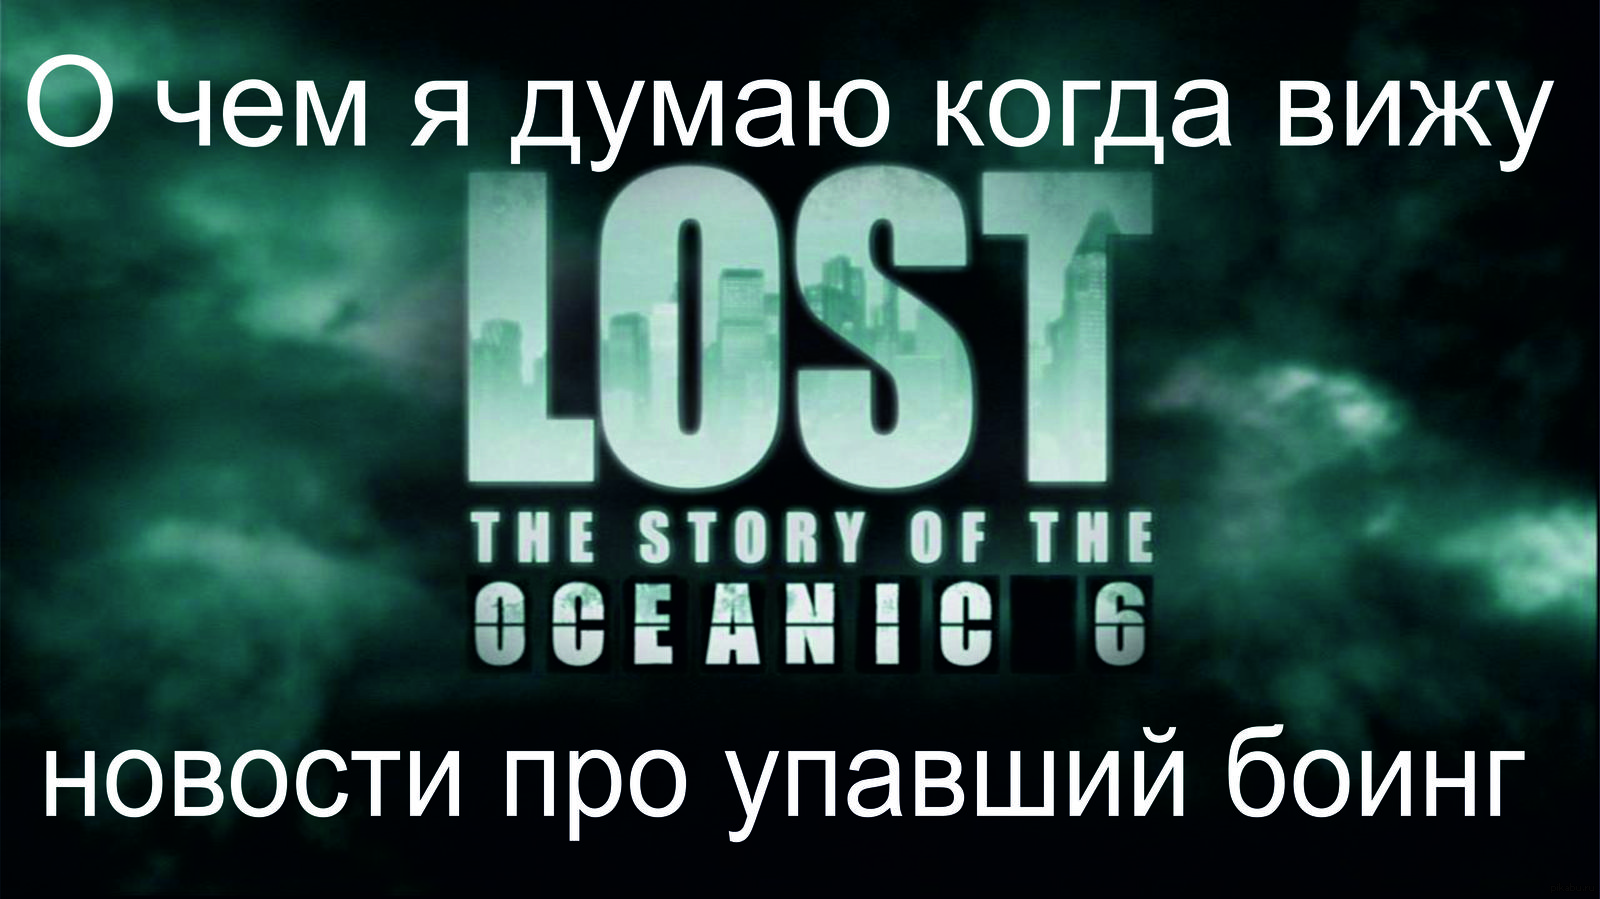 Lose lost lost транскрипция. Лост новый Лидер. Oceanic 815 Lost logo. Судьба зовёт остаться в живых.